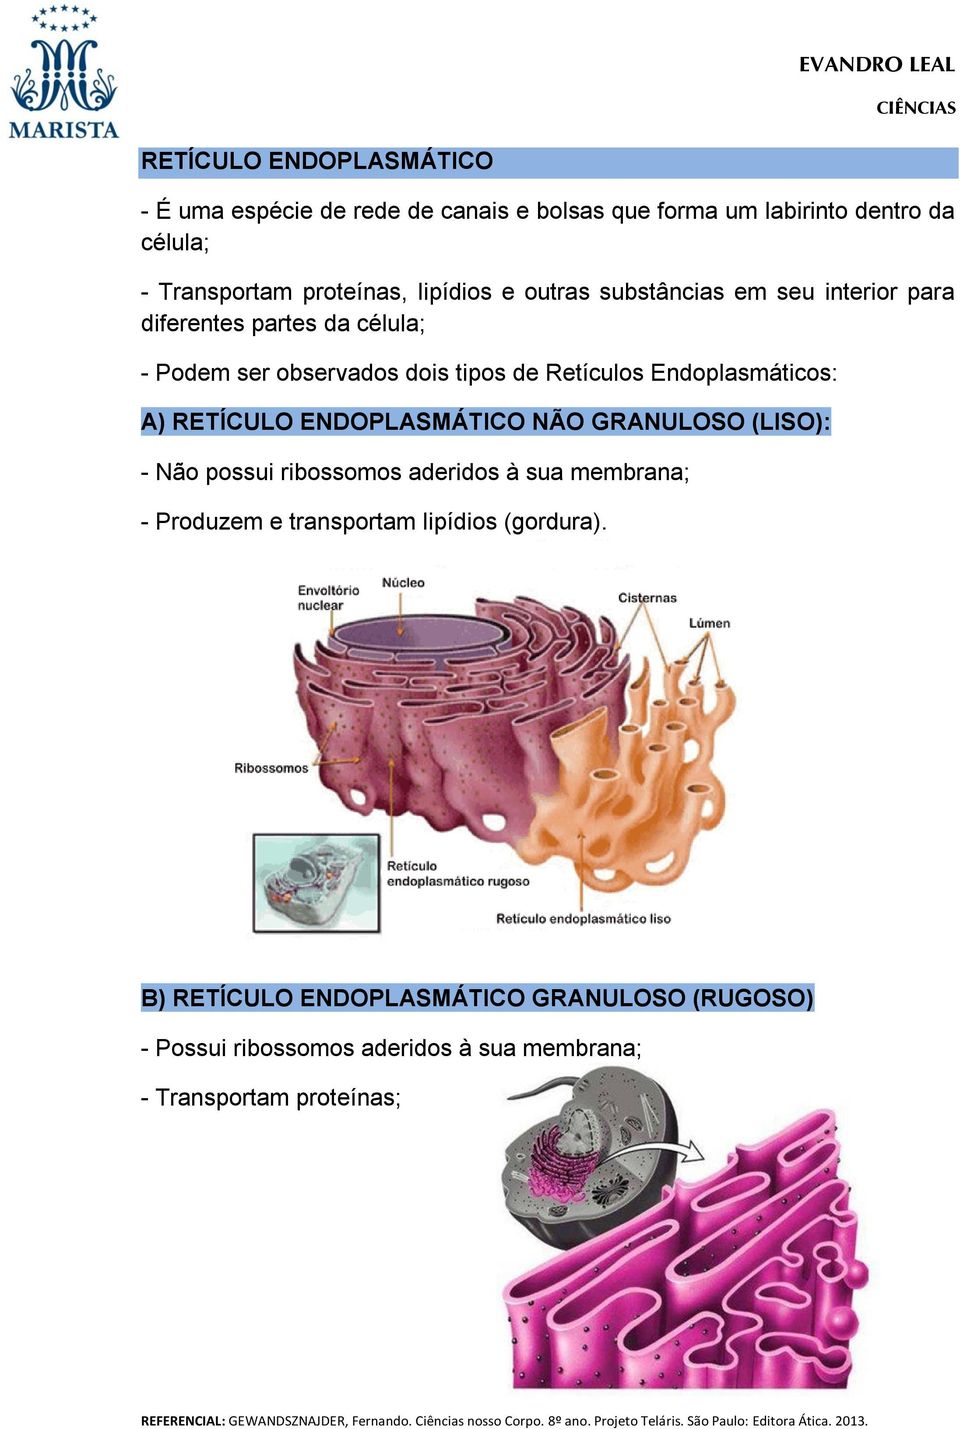 Endoplasmáticos: A) RETÍCULO ENDOPLASMÁTICO NÃO GRANULOSO (LISO): - Não possui ribossomos aderidos à sua membrana; - Produzem e